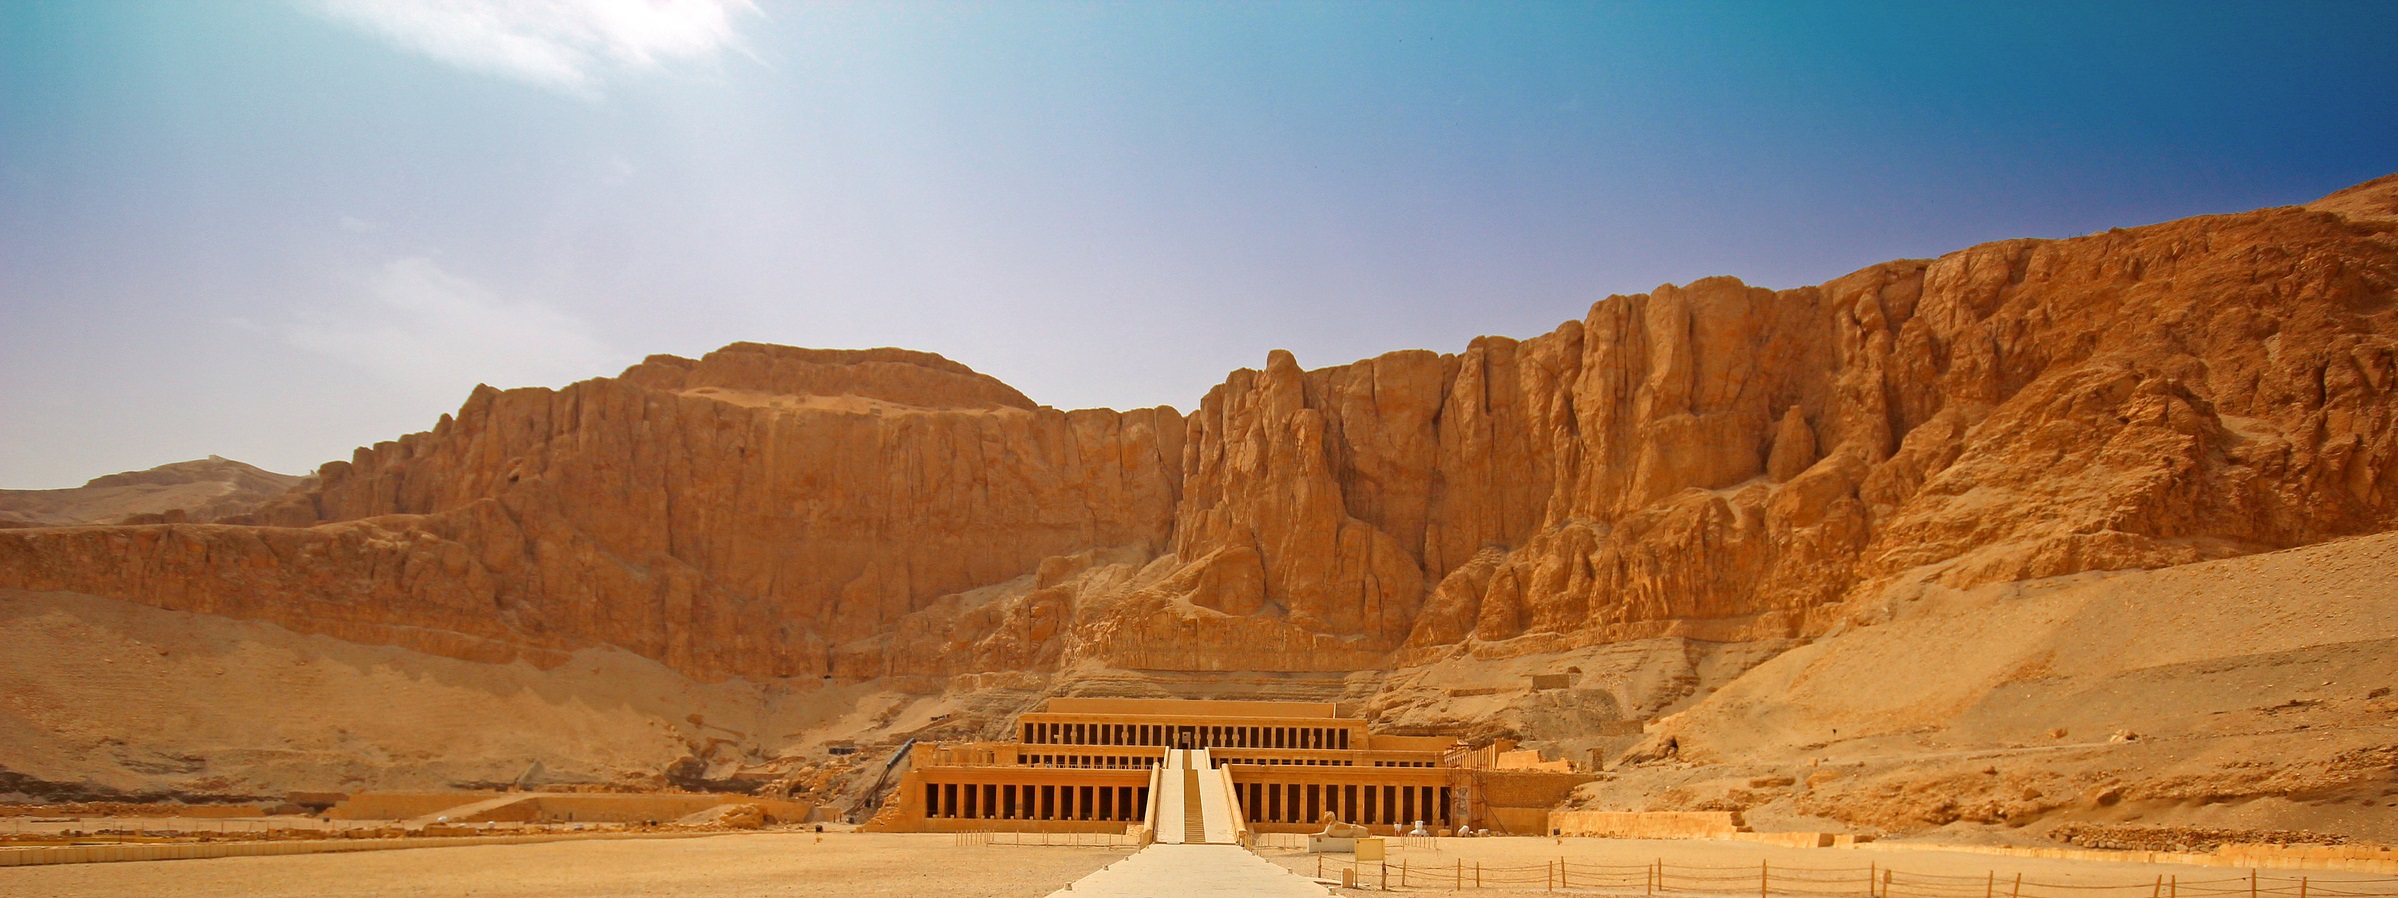 Nilers Tours: Mısır Gelen Tur Operatörü